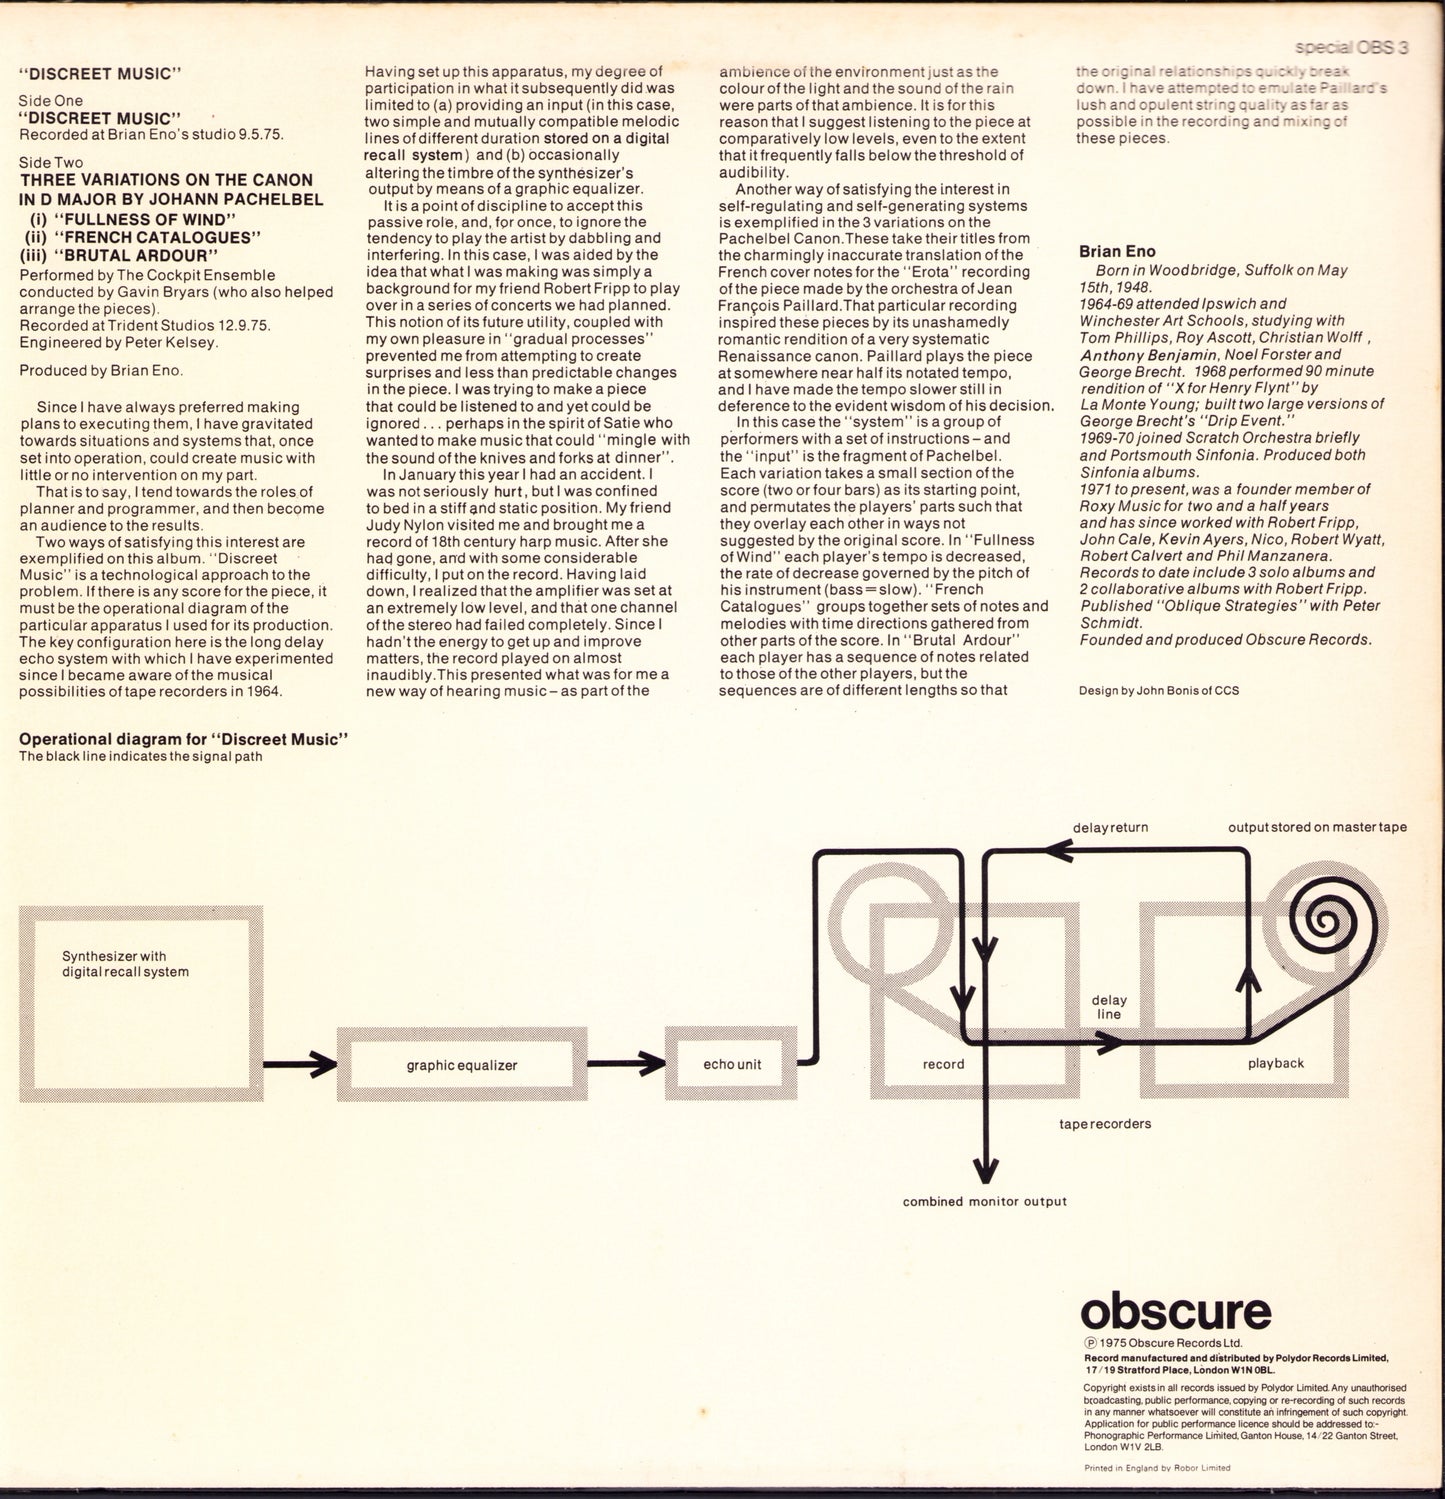 Brian Eno - Discreet Music Vinyl LP